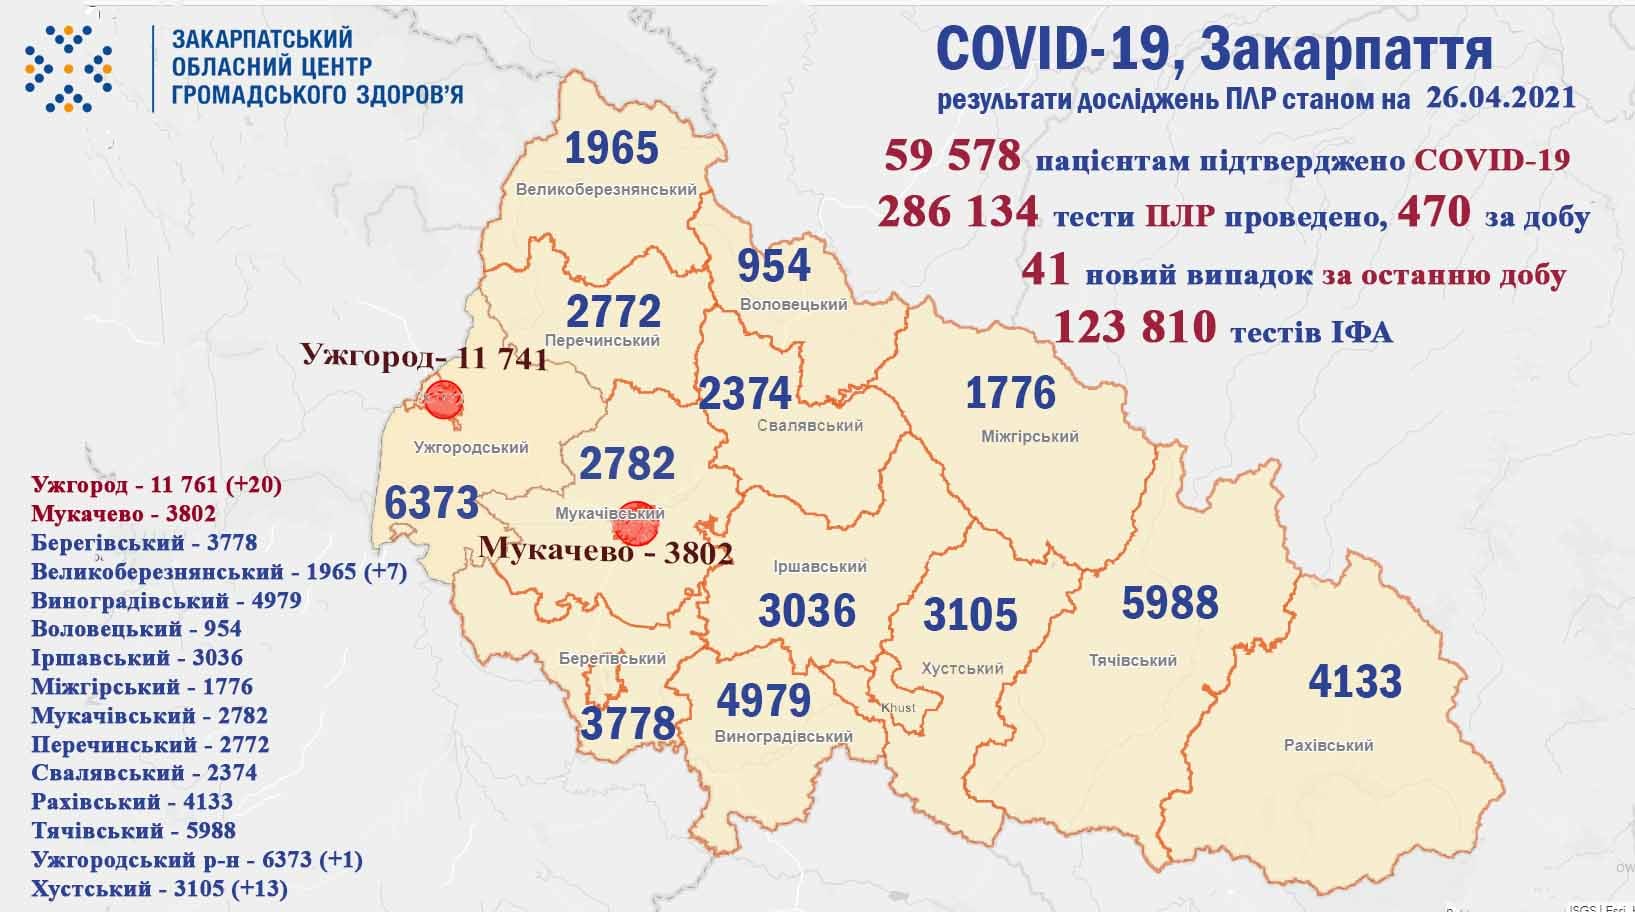 41 випадок COVID-19 виявлено на Закарпатті за добу, помер 1 пацієнт 